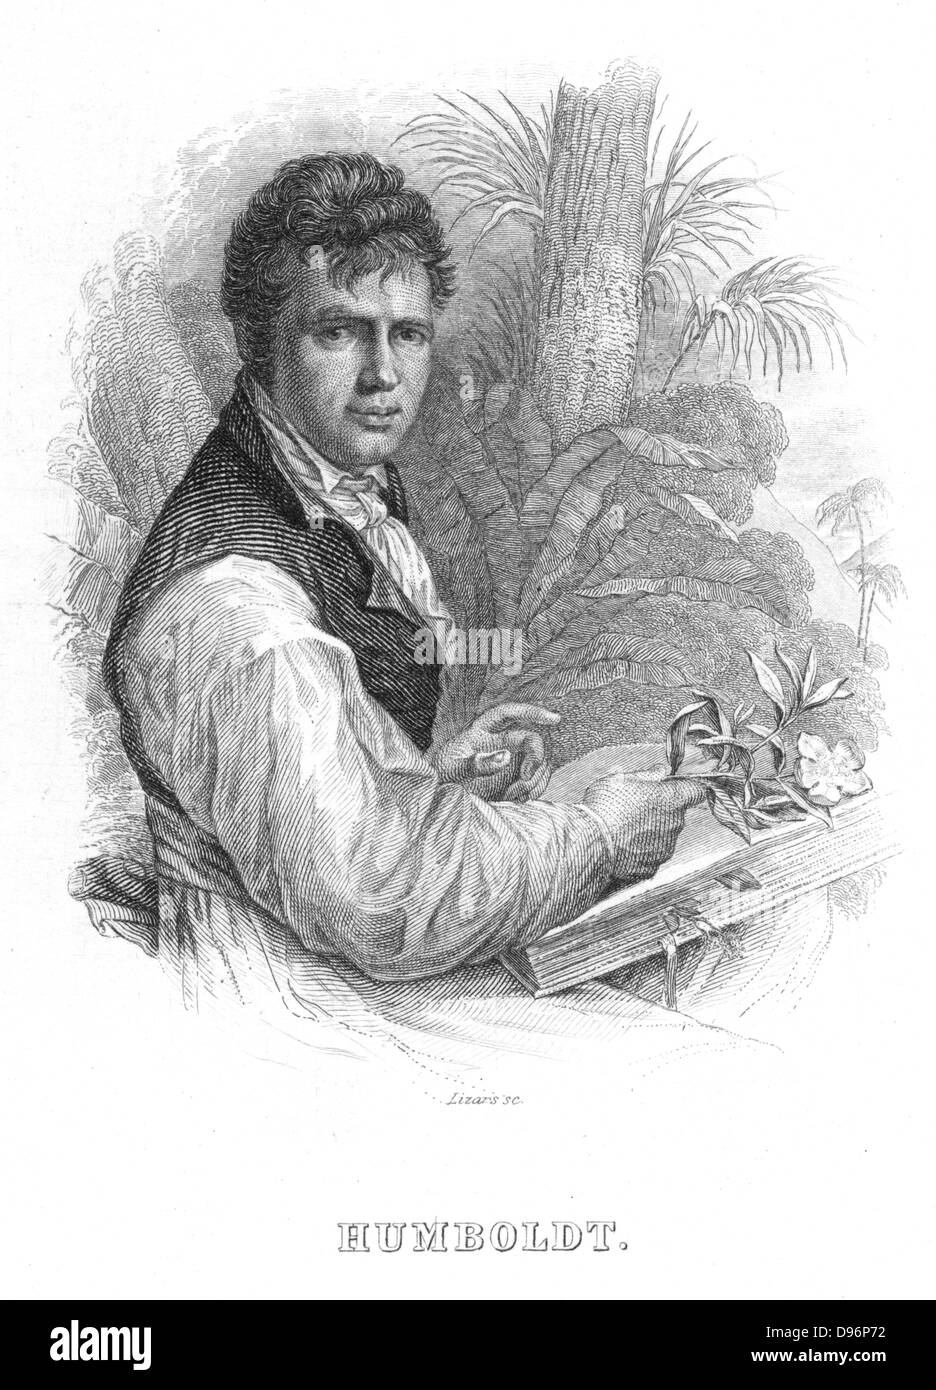 (Friedrich Wilhelm Heinrich) Alexander von Humboldt (1769-1859), naturaliste allemand. Les intérêts du Humboldt inclus la géophysique, de la géologie et de la botanique, et il est parfois appelé le fondateur de l'écologie. Il est montré ici au moment de son expédition en Amérique du Sud (1800-1804) lorsque, avec l'Bonplond Aime botaniste français (1773-1858), il explore l'Orénoque et de l'Amazonie et recueilli 60 000 spécimens de plantes. Gravure (Édimbourg, c1830). Banque D'Images